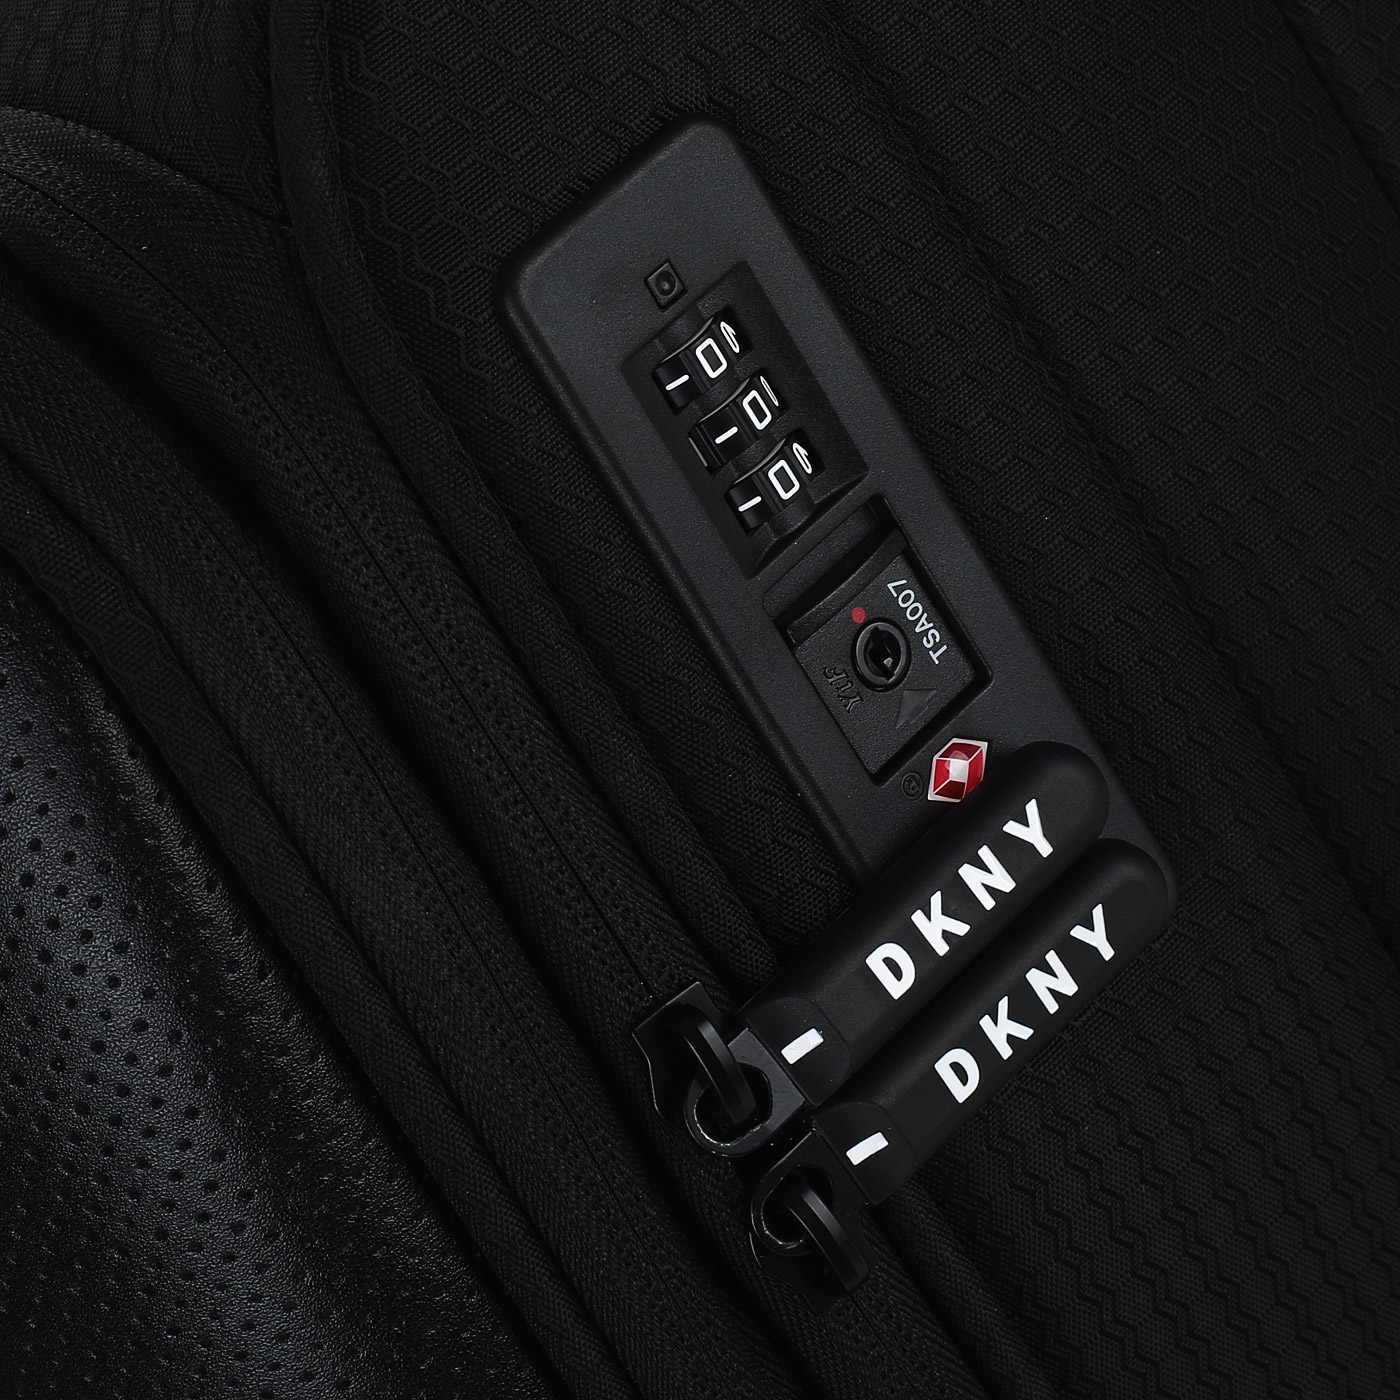 Чемодан средний M тканевый с кодовым замком DKNY DKNY-306 Fearless